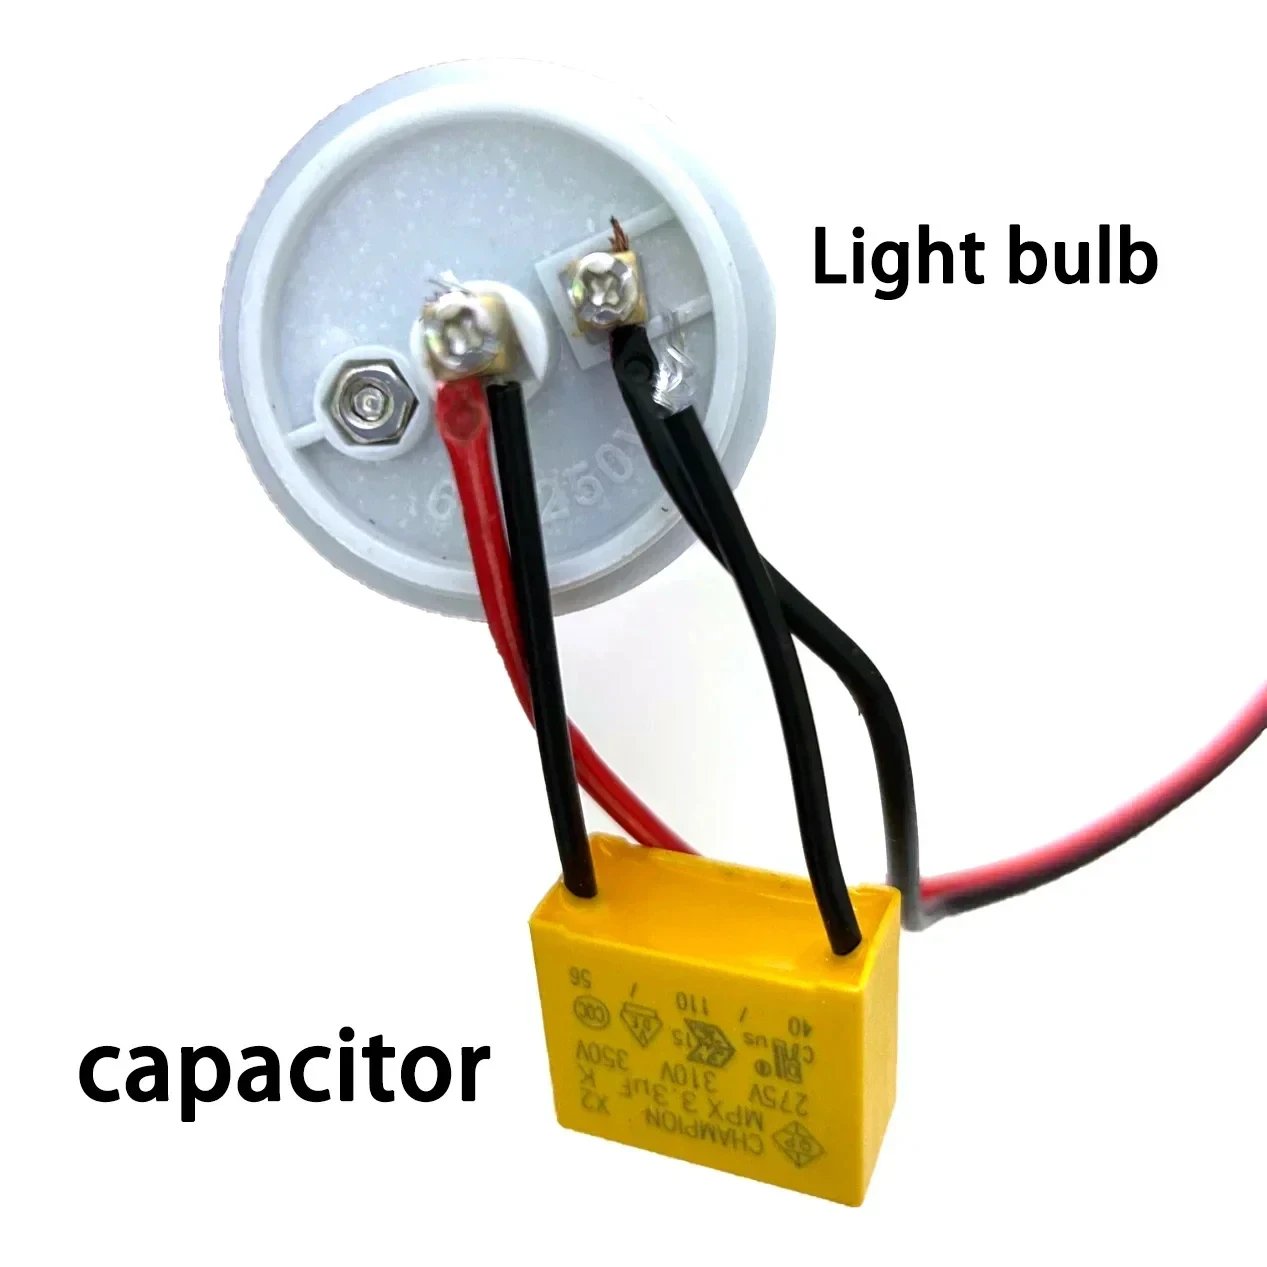 3,3 В переменного тока, мкФ, безопасный фотоконденсатор, подходит для умных сенсорных переключателей без нейтрального провода